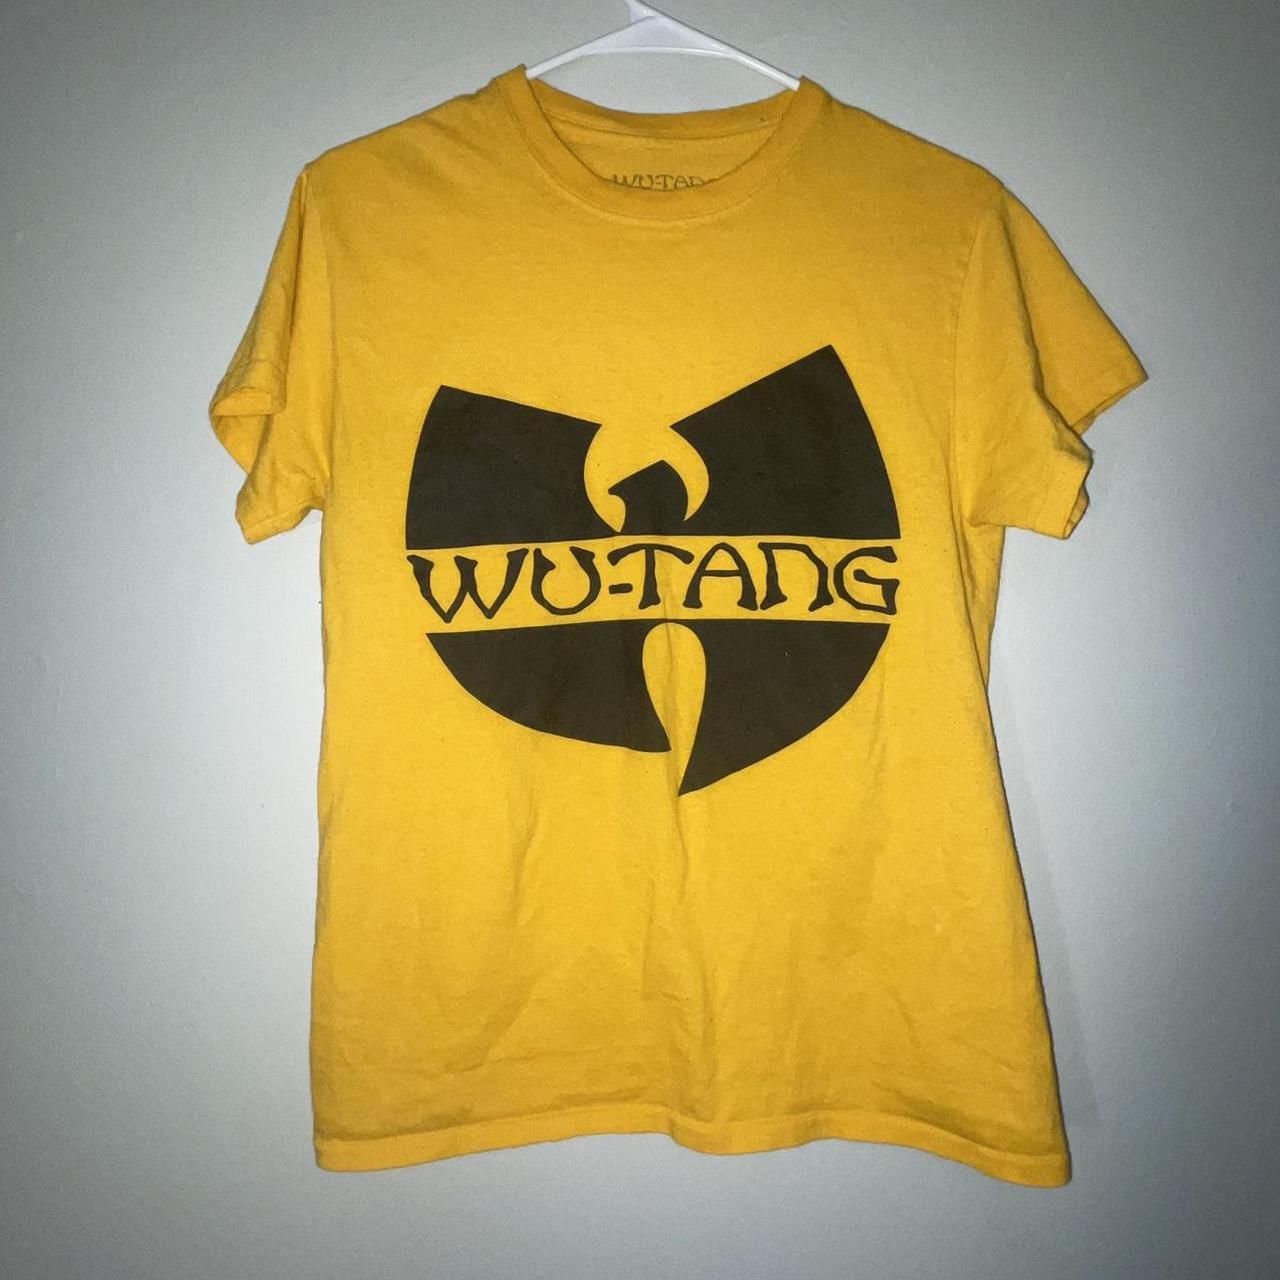 Wu Wear Men's Yellow and Black T-shirt